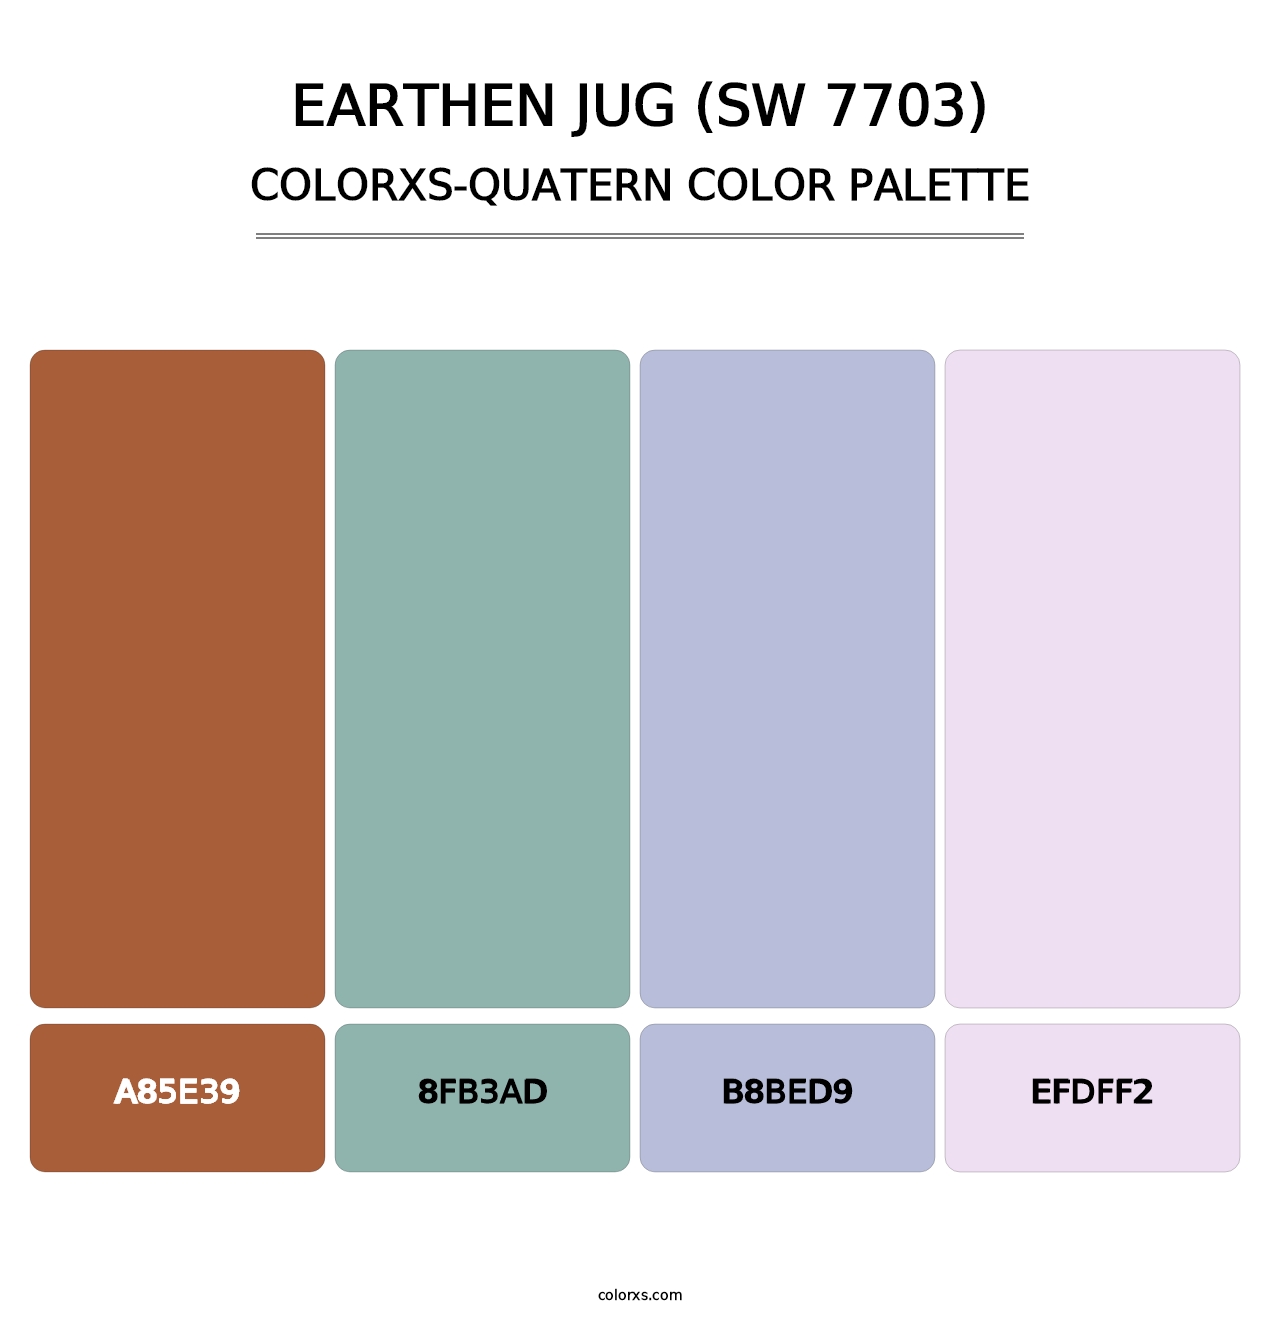 Earthen Jug (SW 7703) - Colorxs Quatern Palette